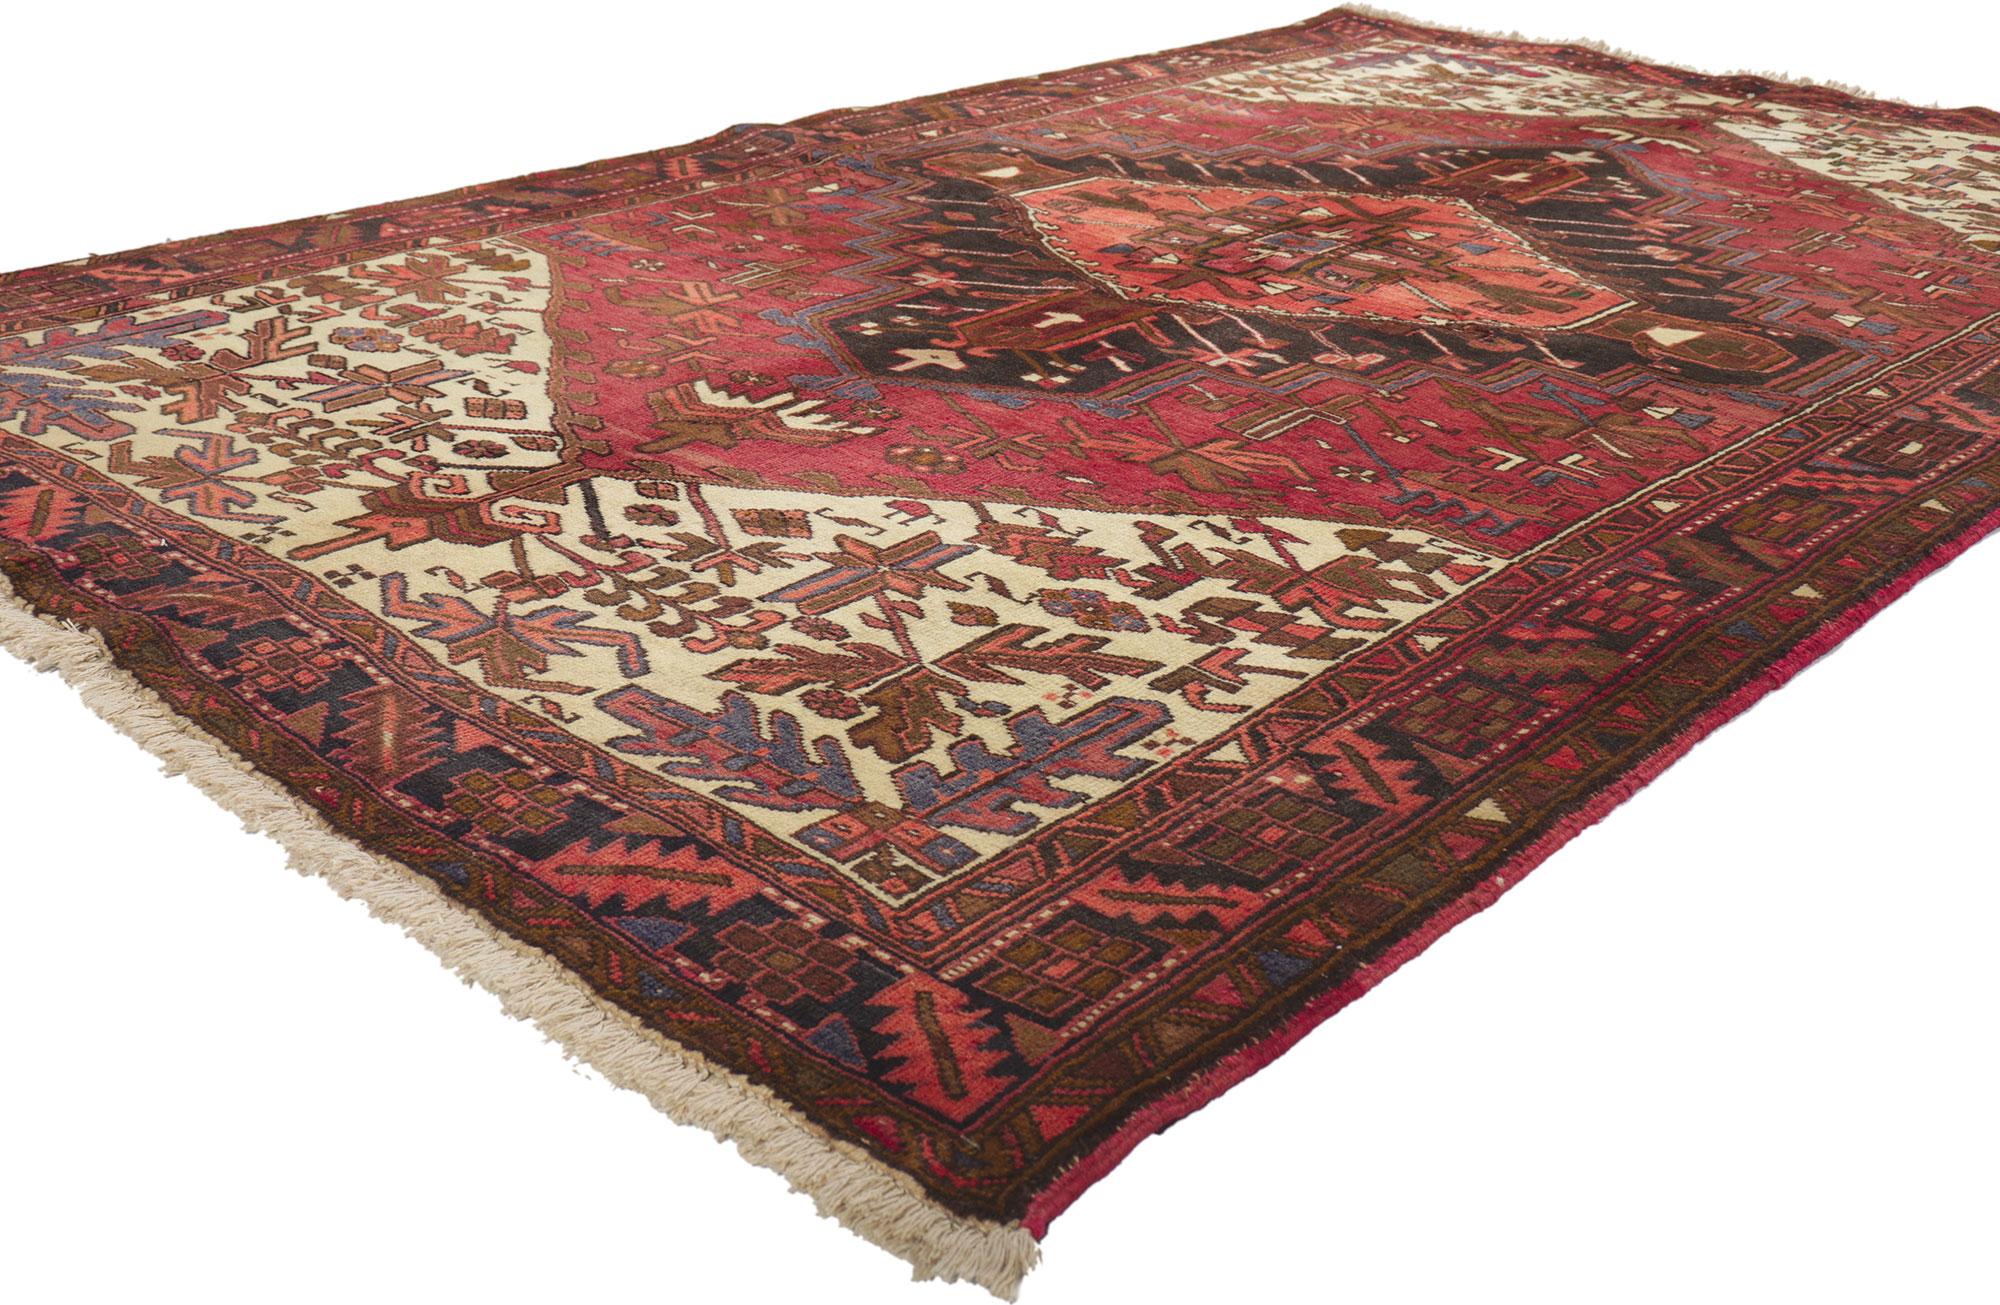 75304 Tapis persan vintage Heriz, 04'11 x 07'11. 
Emanant d'un style moderne avec des détails et une texture incroyables, ce tapis persan Heriz vintage en laine noué à la main est une vision captivante de la beauté tissée. L'étonnant design